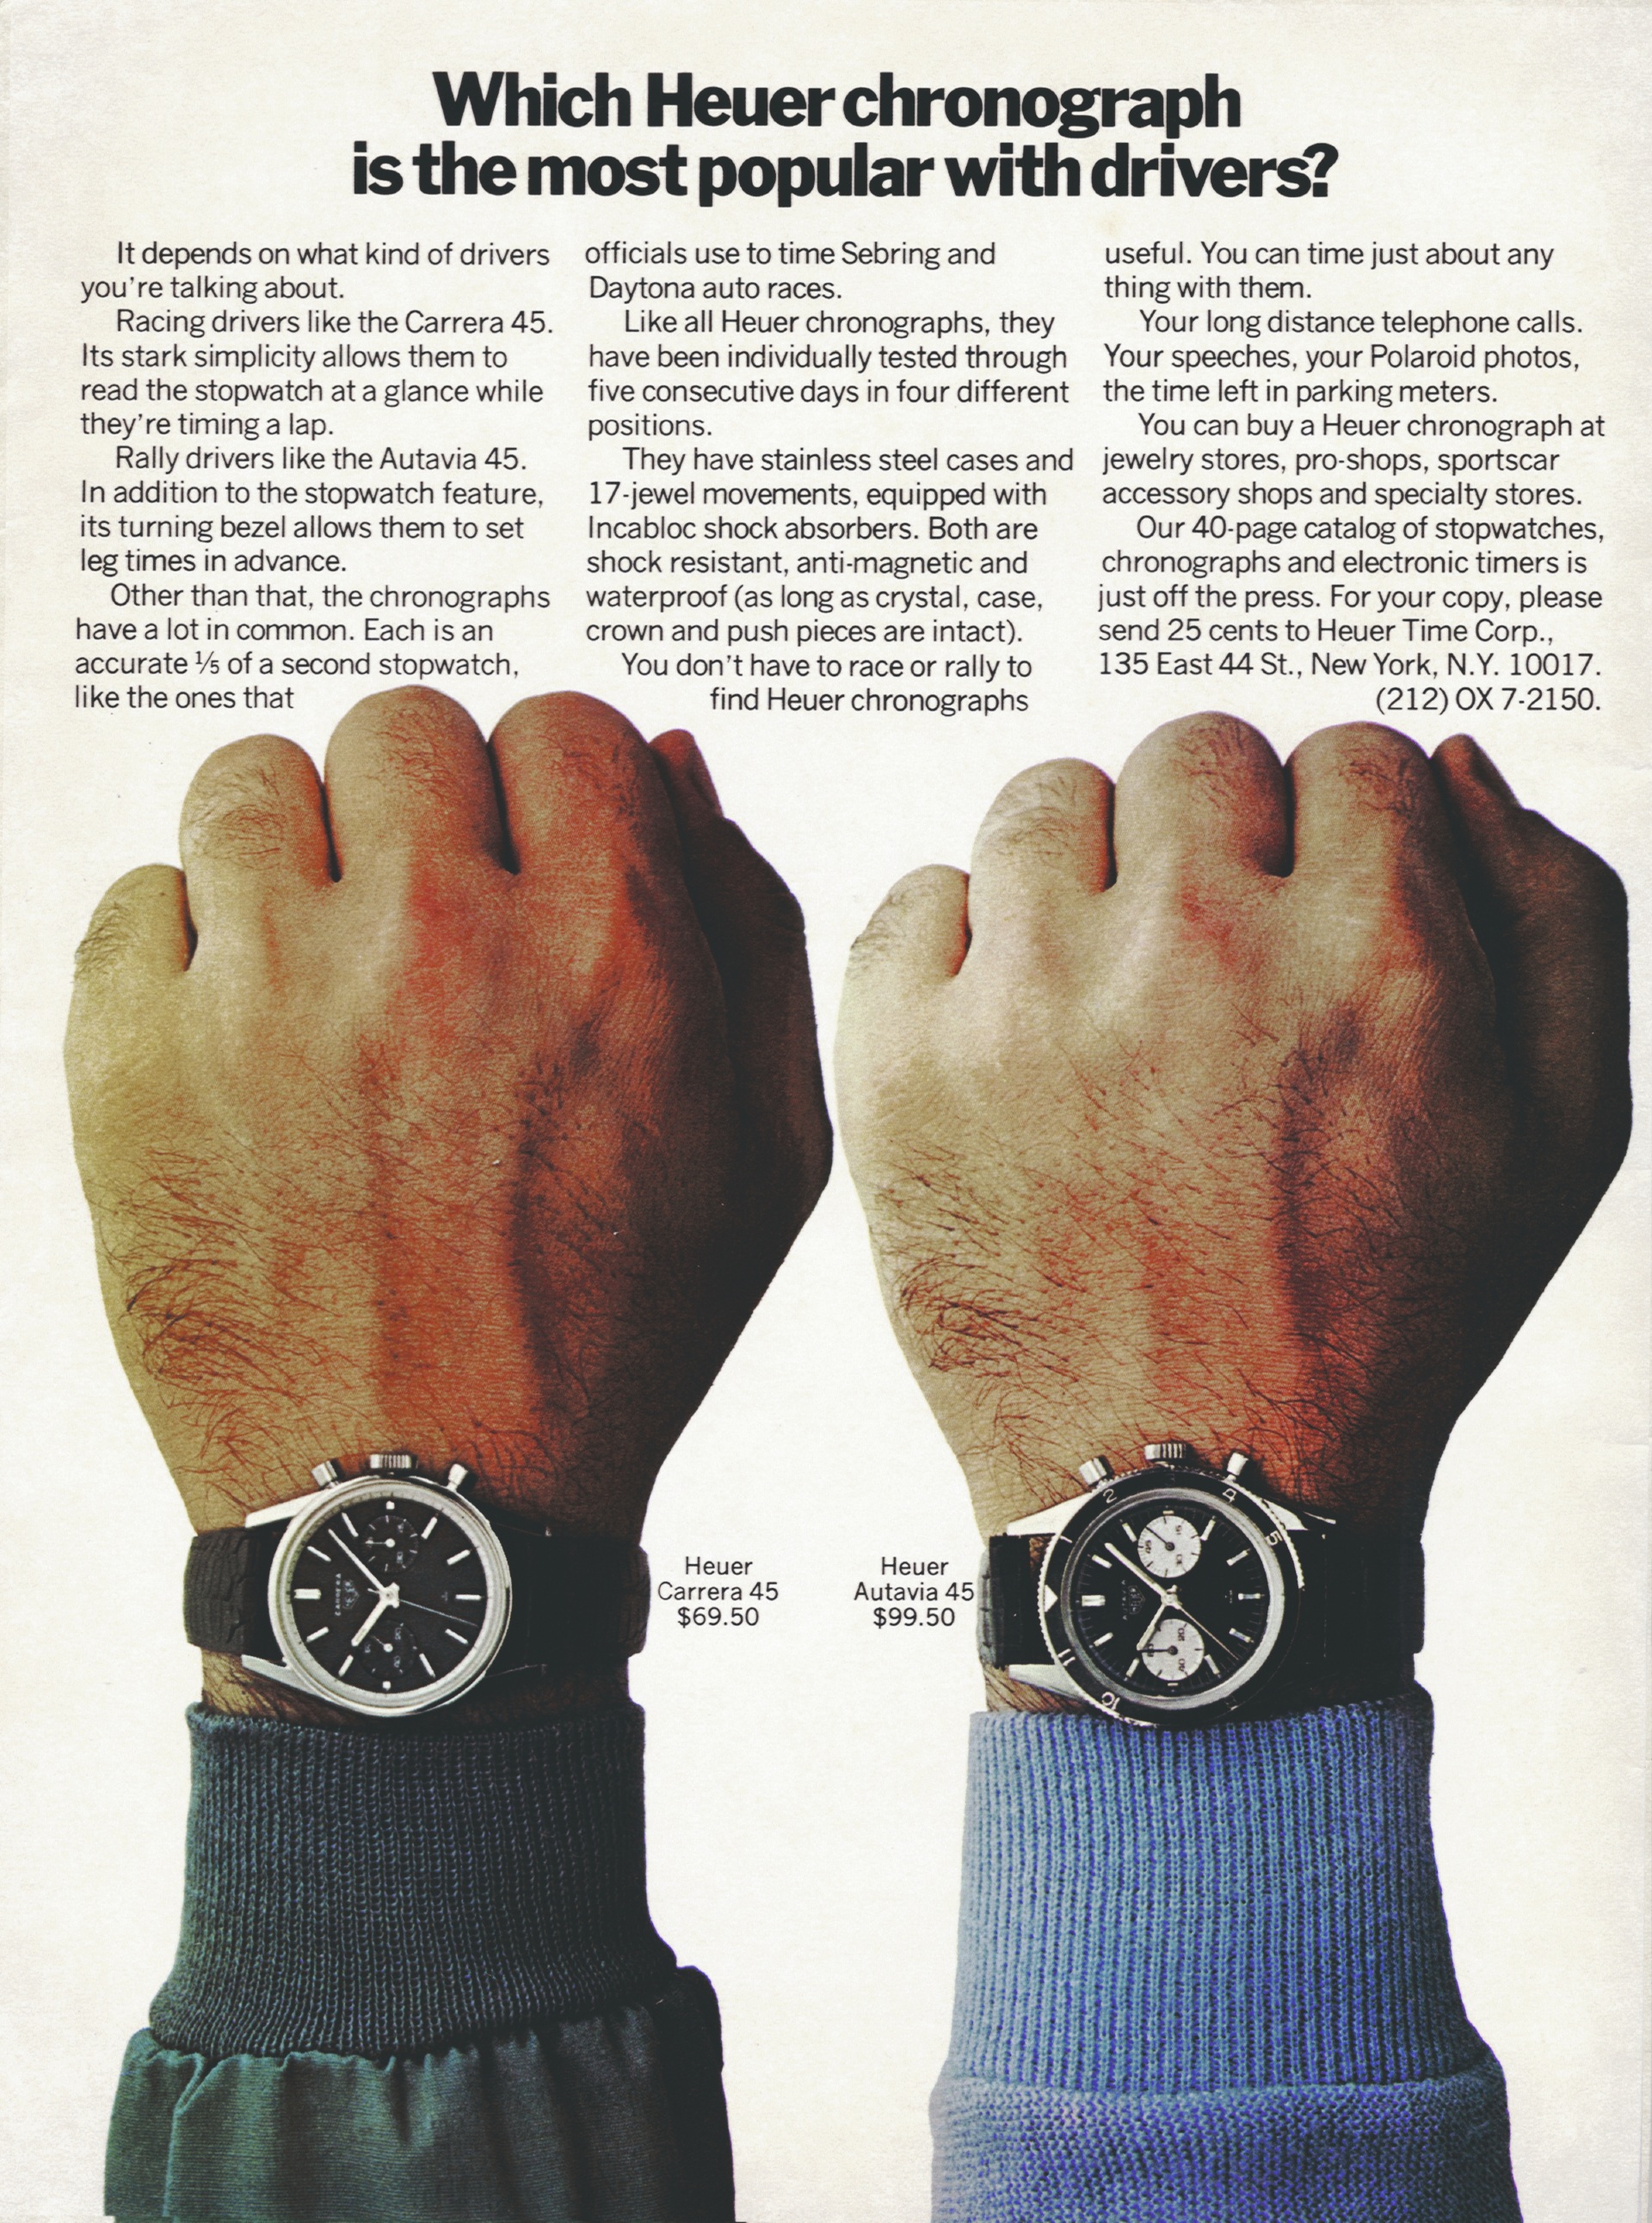 Реклама хронографов Heuer, 1968 год